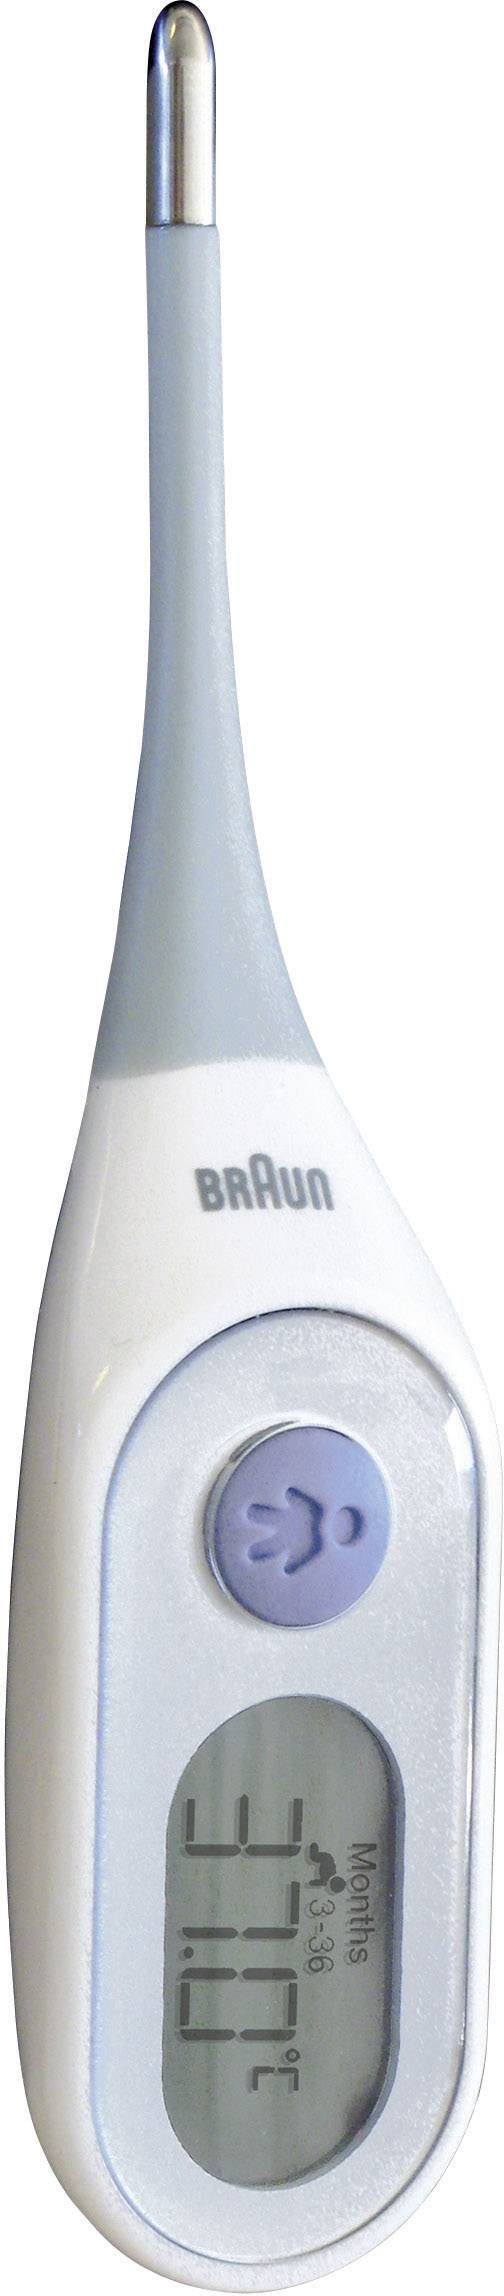 Braun PRT2000 Fieberthermometer Mit Fieberalarm kaufen